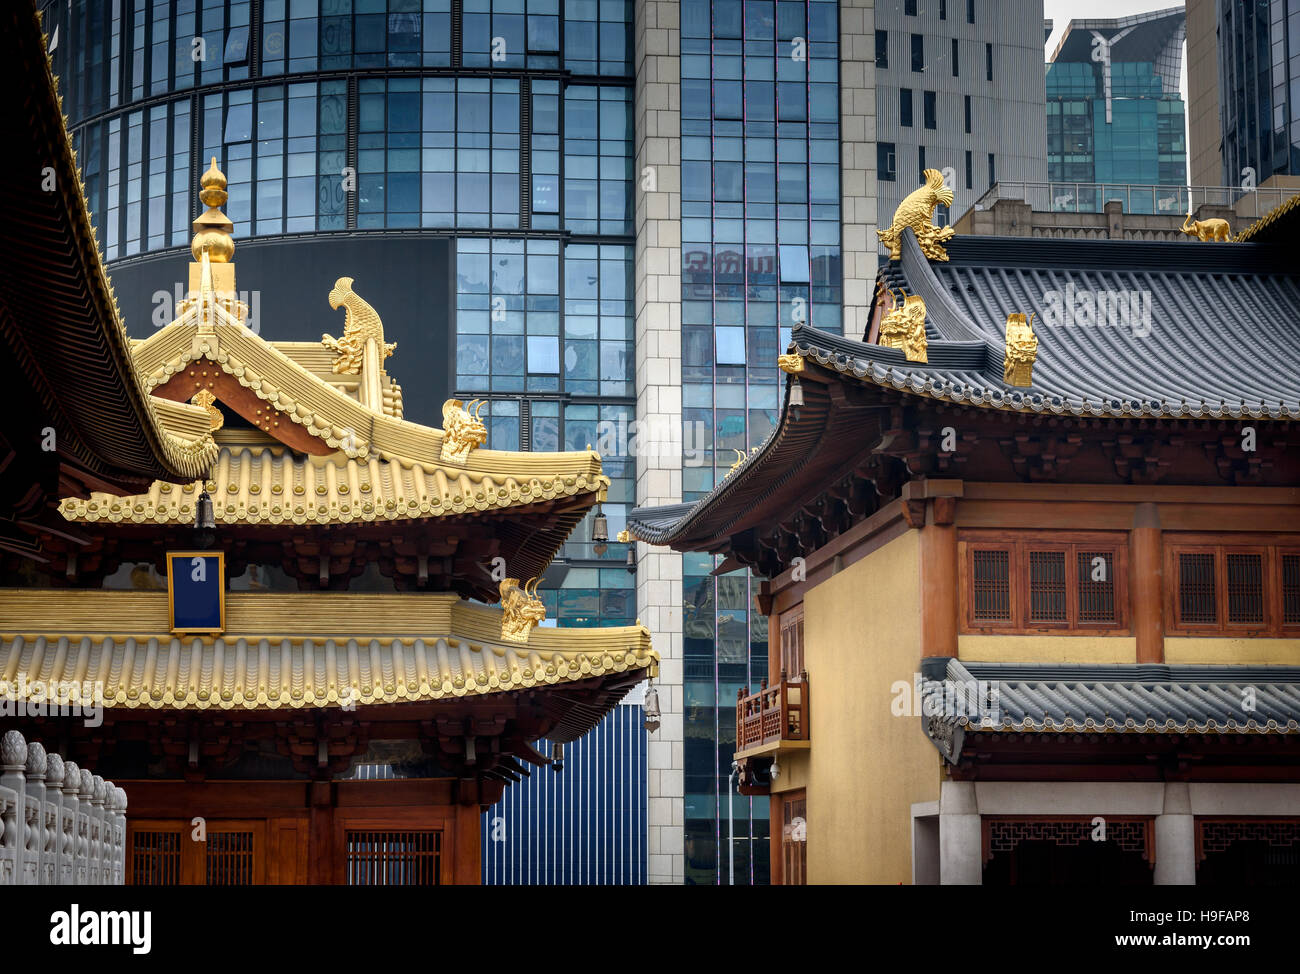 La tradizionale architettura cinese di un tempio in Cina a Shanghai. Foto Stock